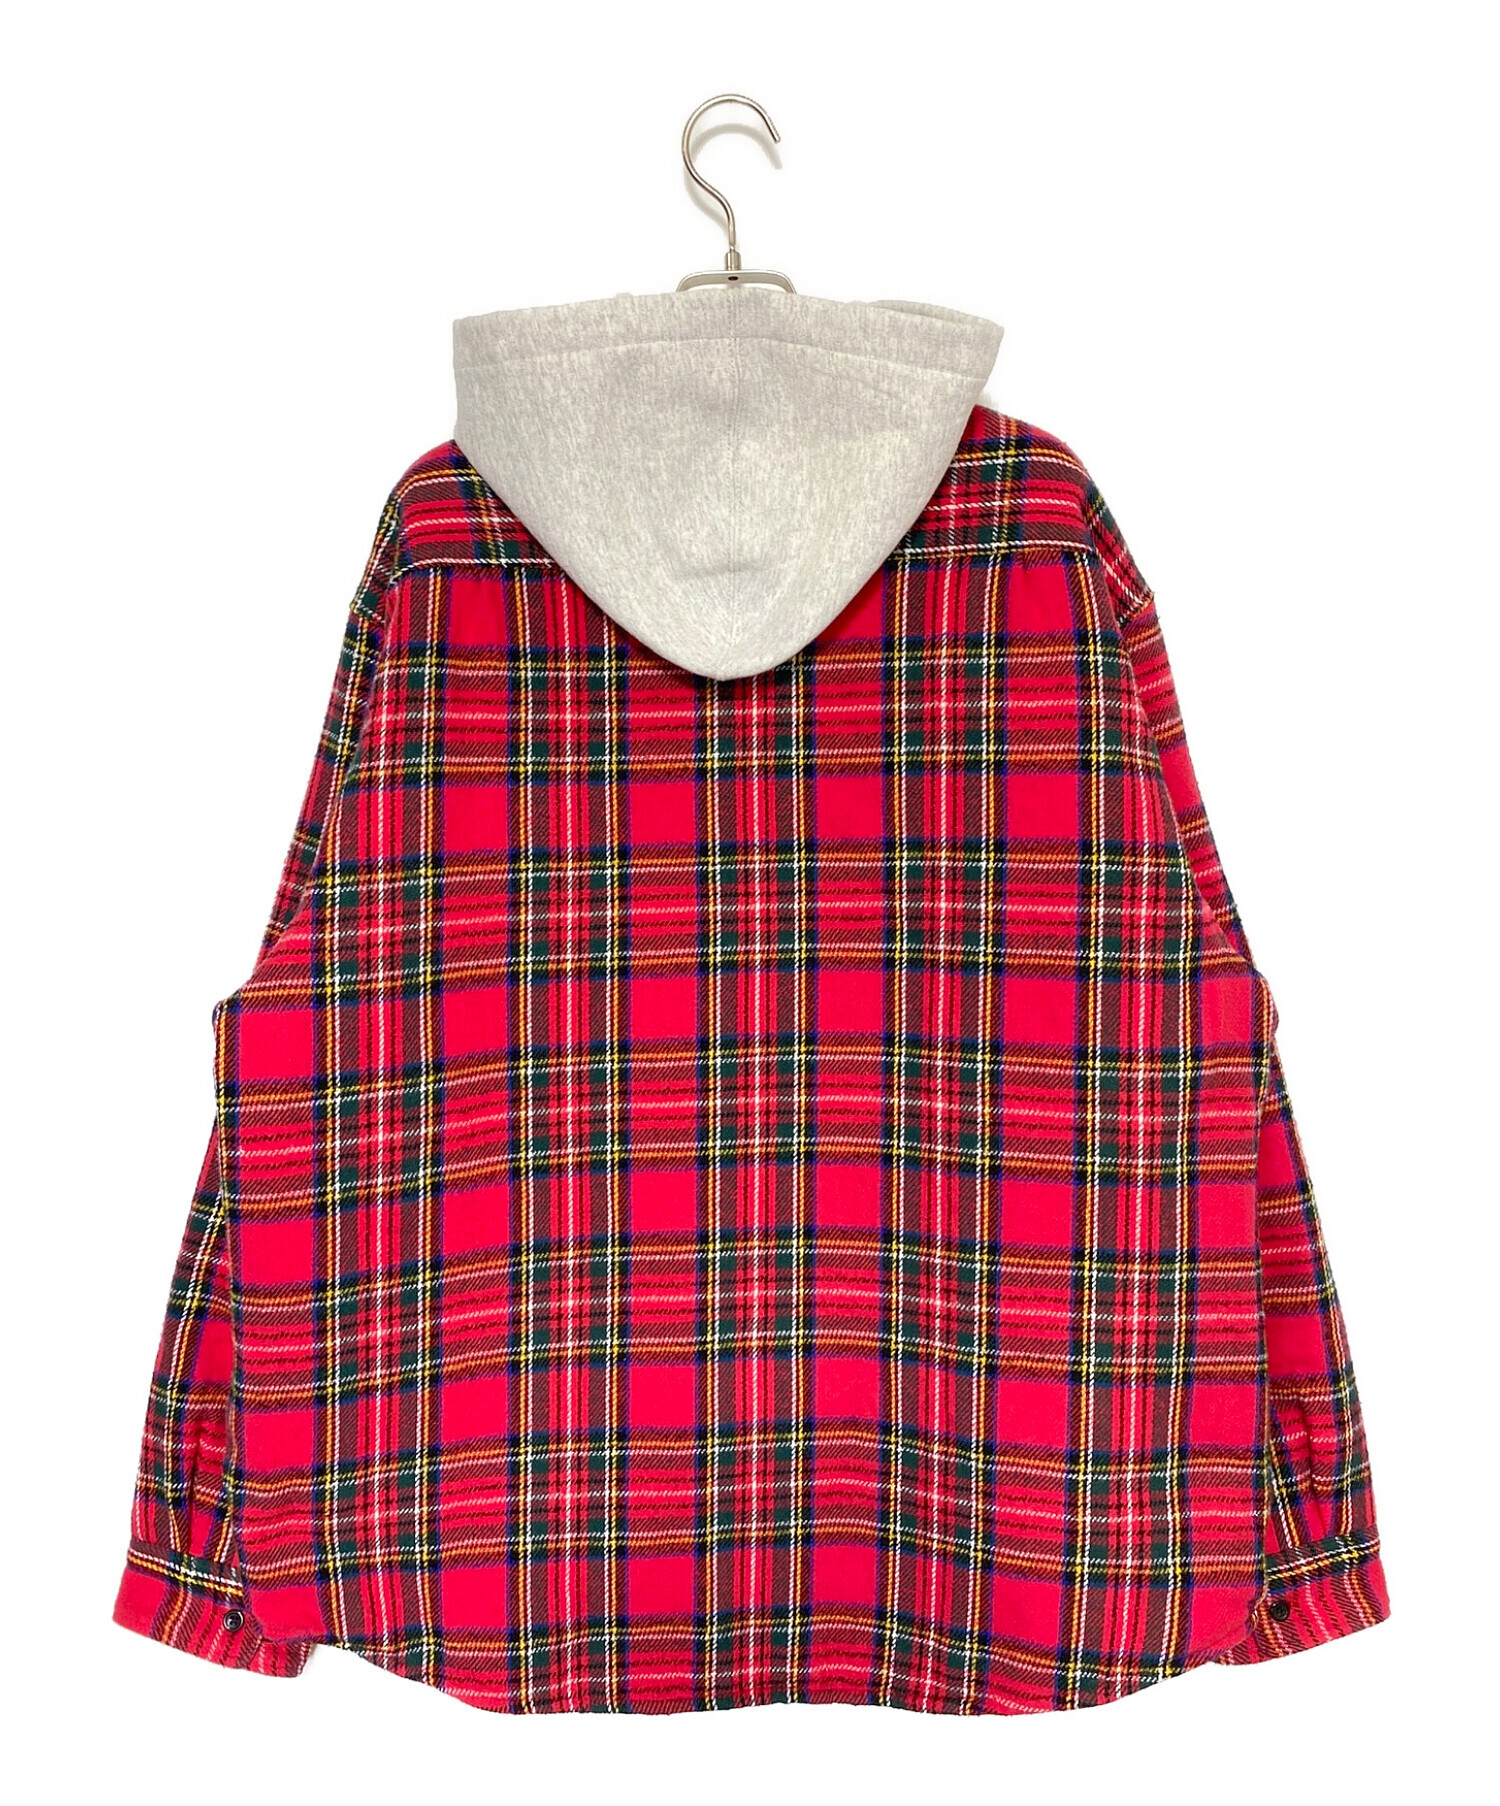 8,740円supreme Tartan Flannel Hooded Shirt